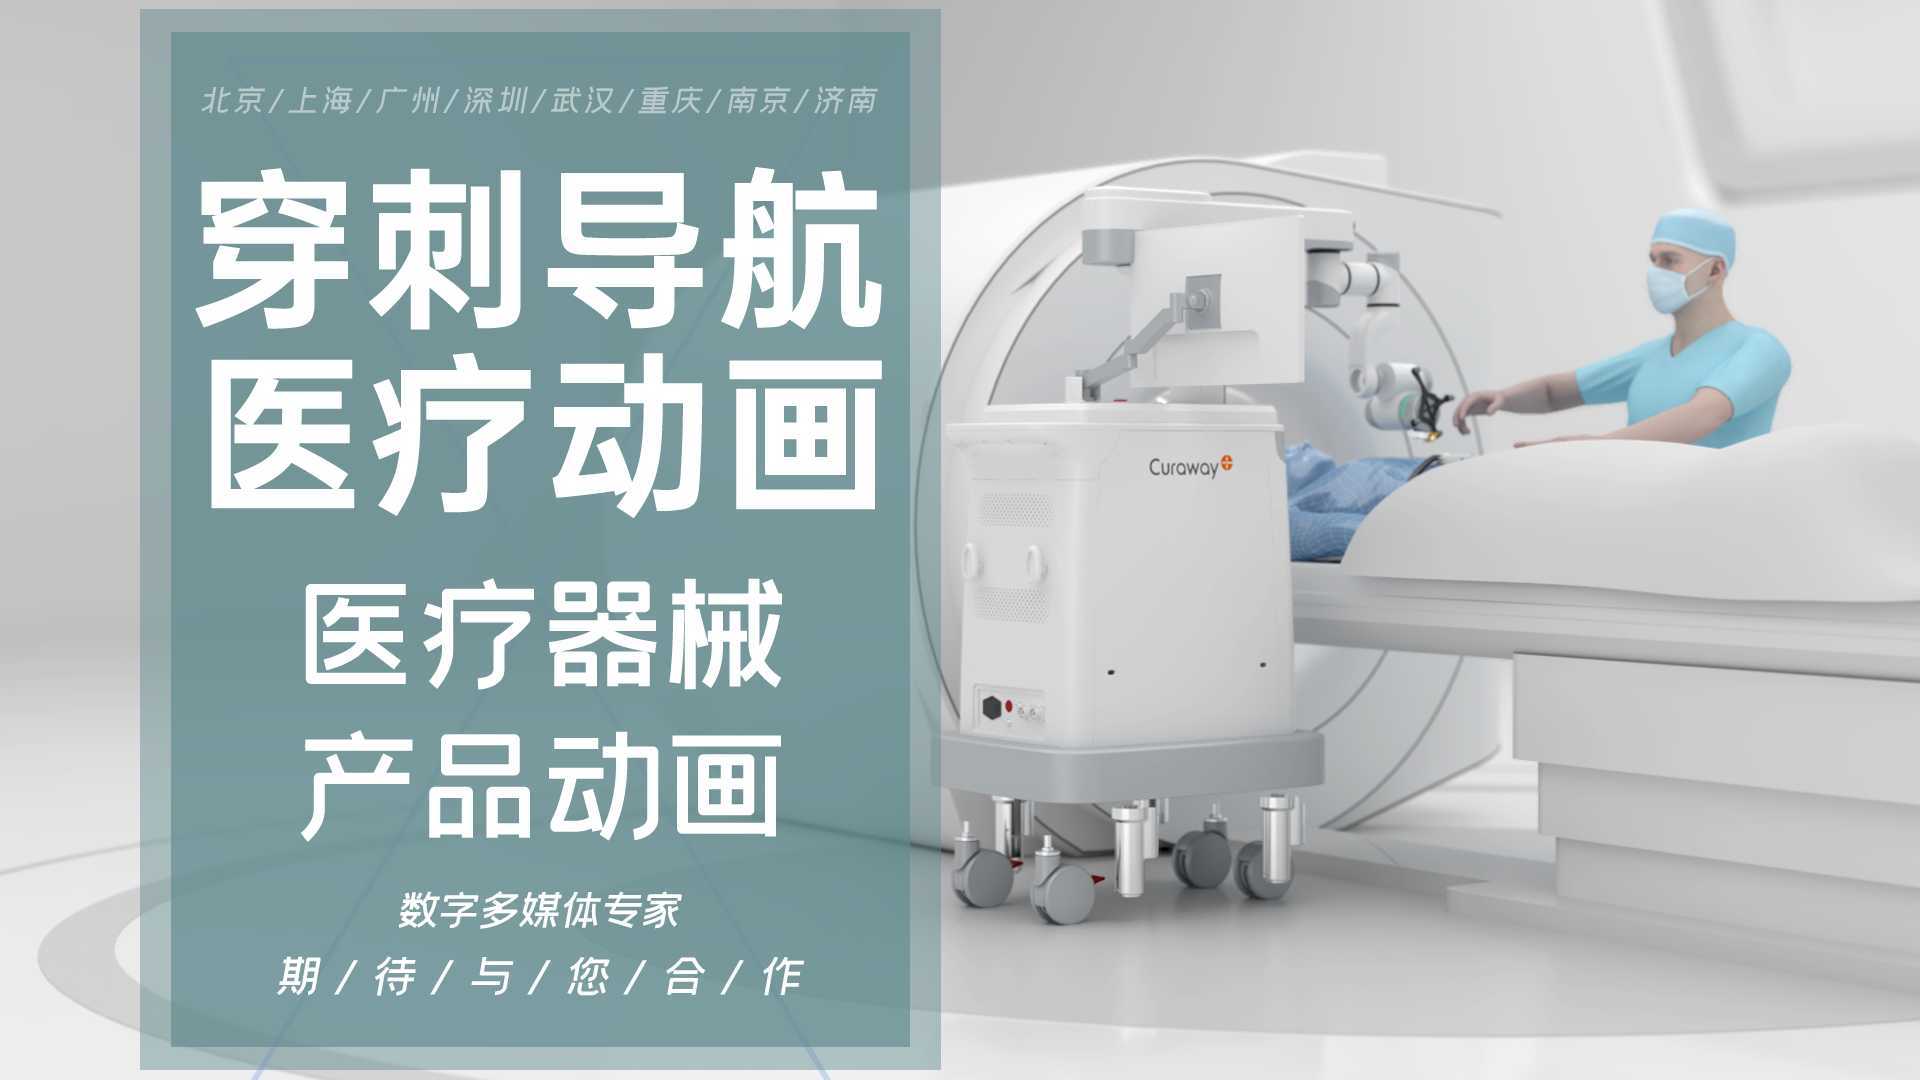 穿刺导航机器人智能微创手术CT光学系统机械臂医学远程医疗北京上海广州三维动画制作